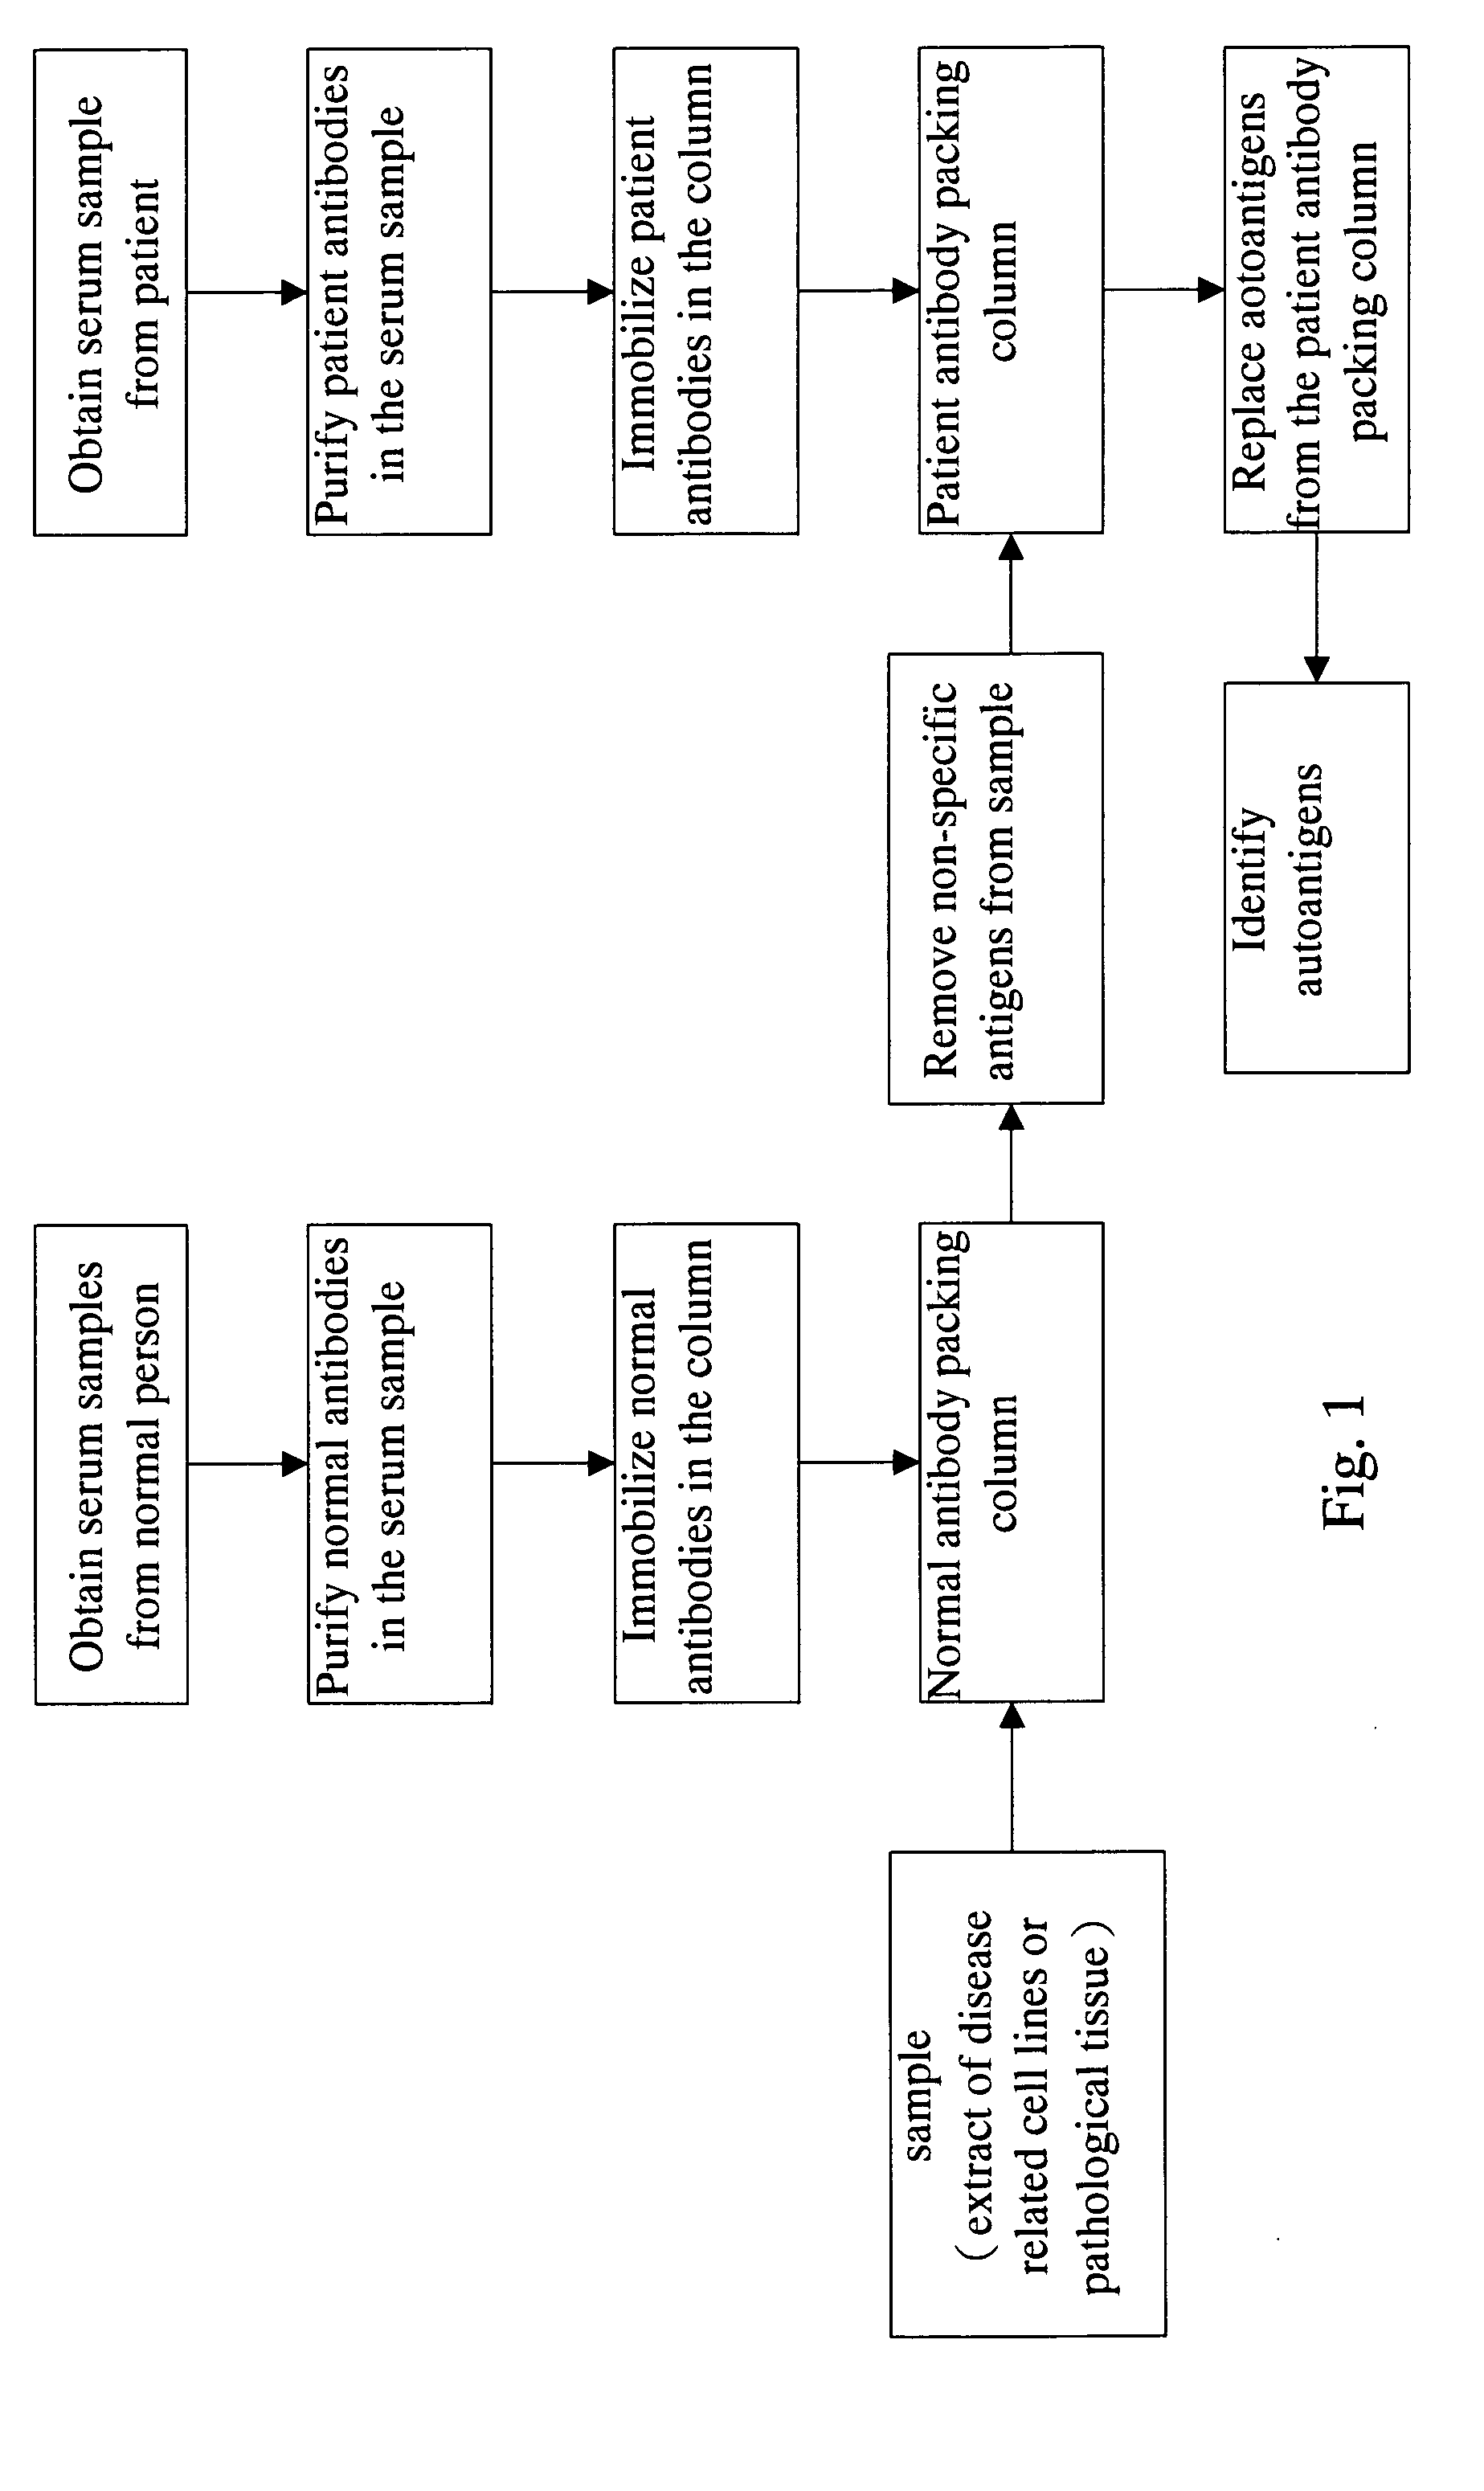 Method for screening autoantigen